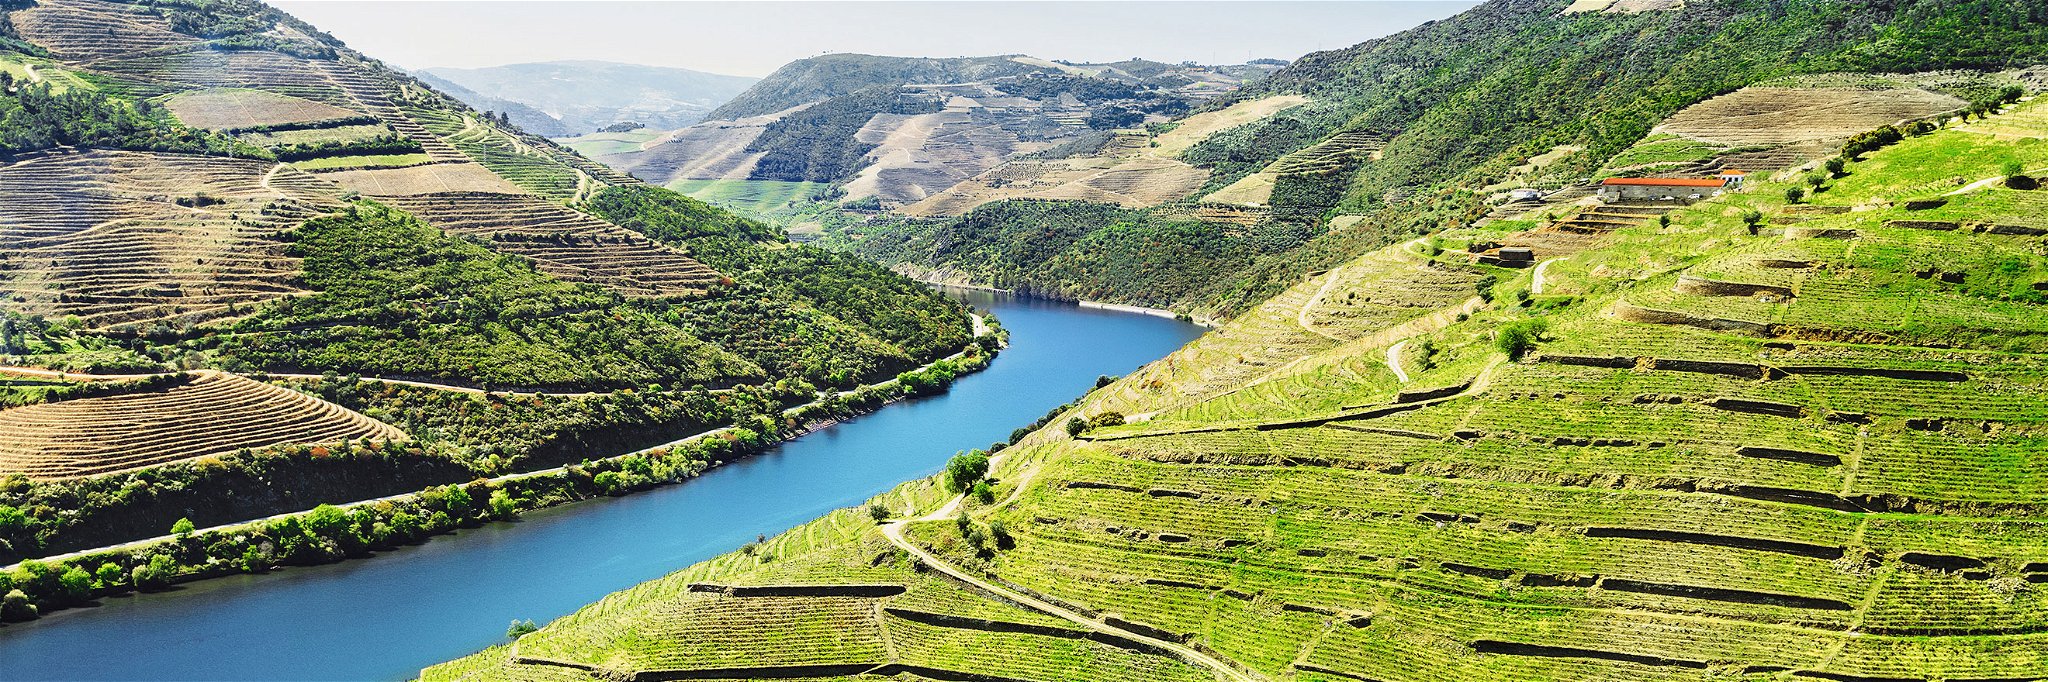 Das Douro-Tal ist eines der grössten und bekanntesten Weinbaugebiete.